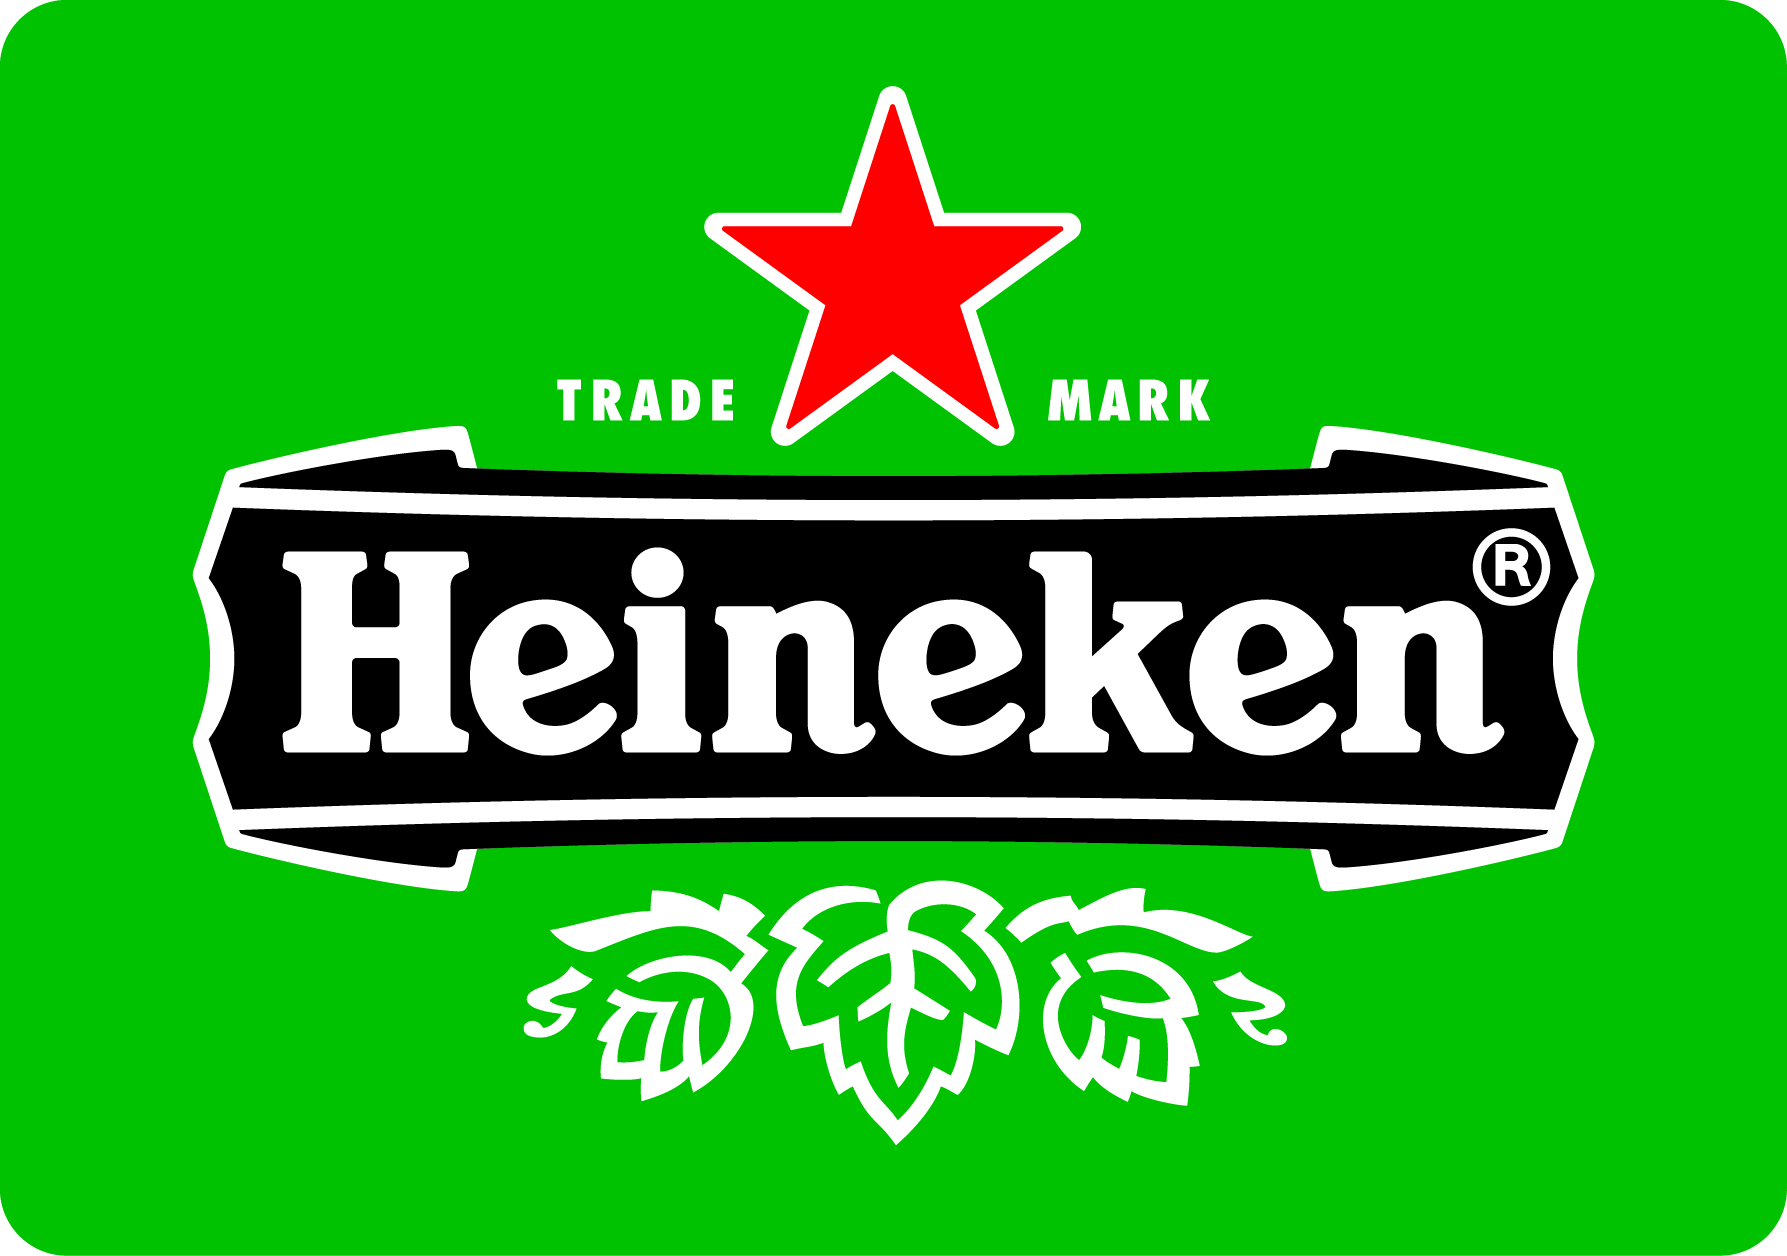 Heineken Sales in Africa Improve